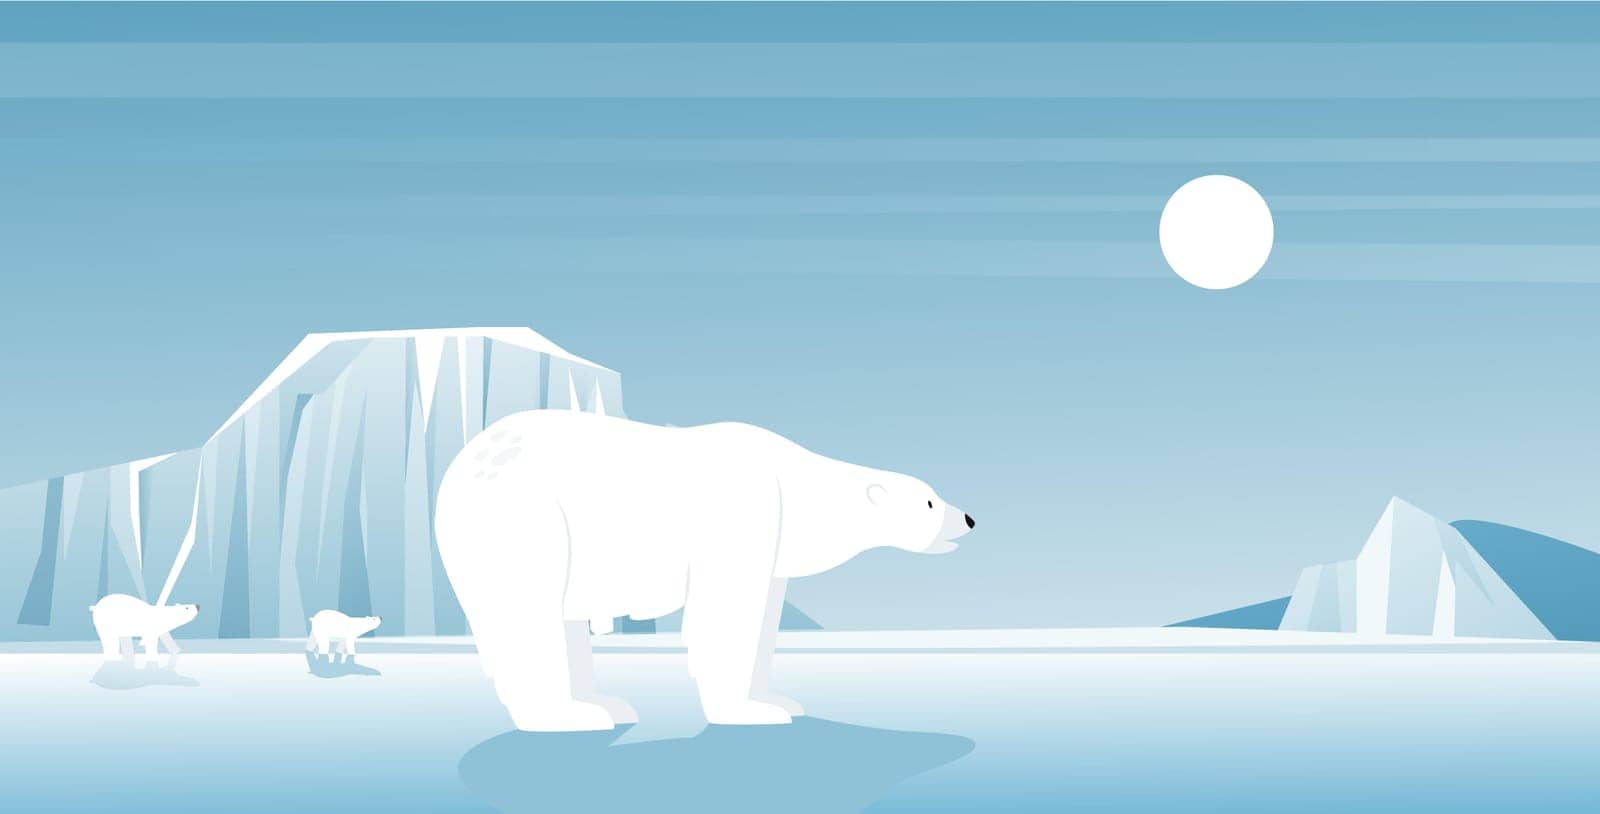 Polar bear in ice arctic landscape, north winter scene, wild animals in cold climate by Popov